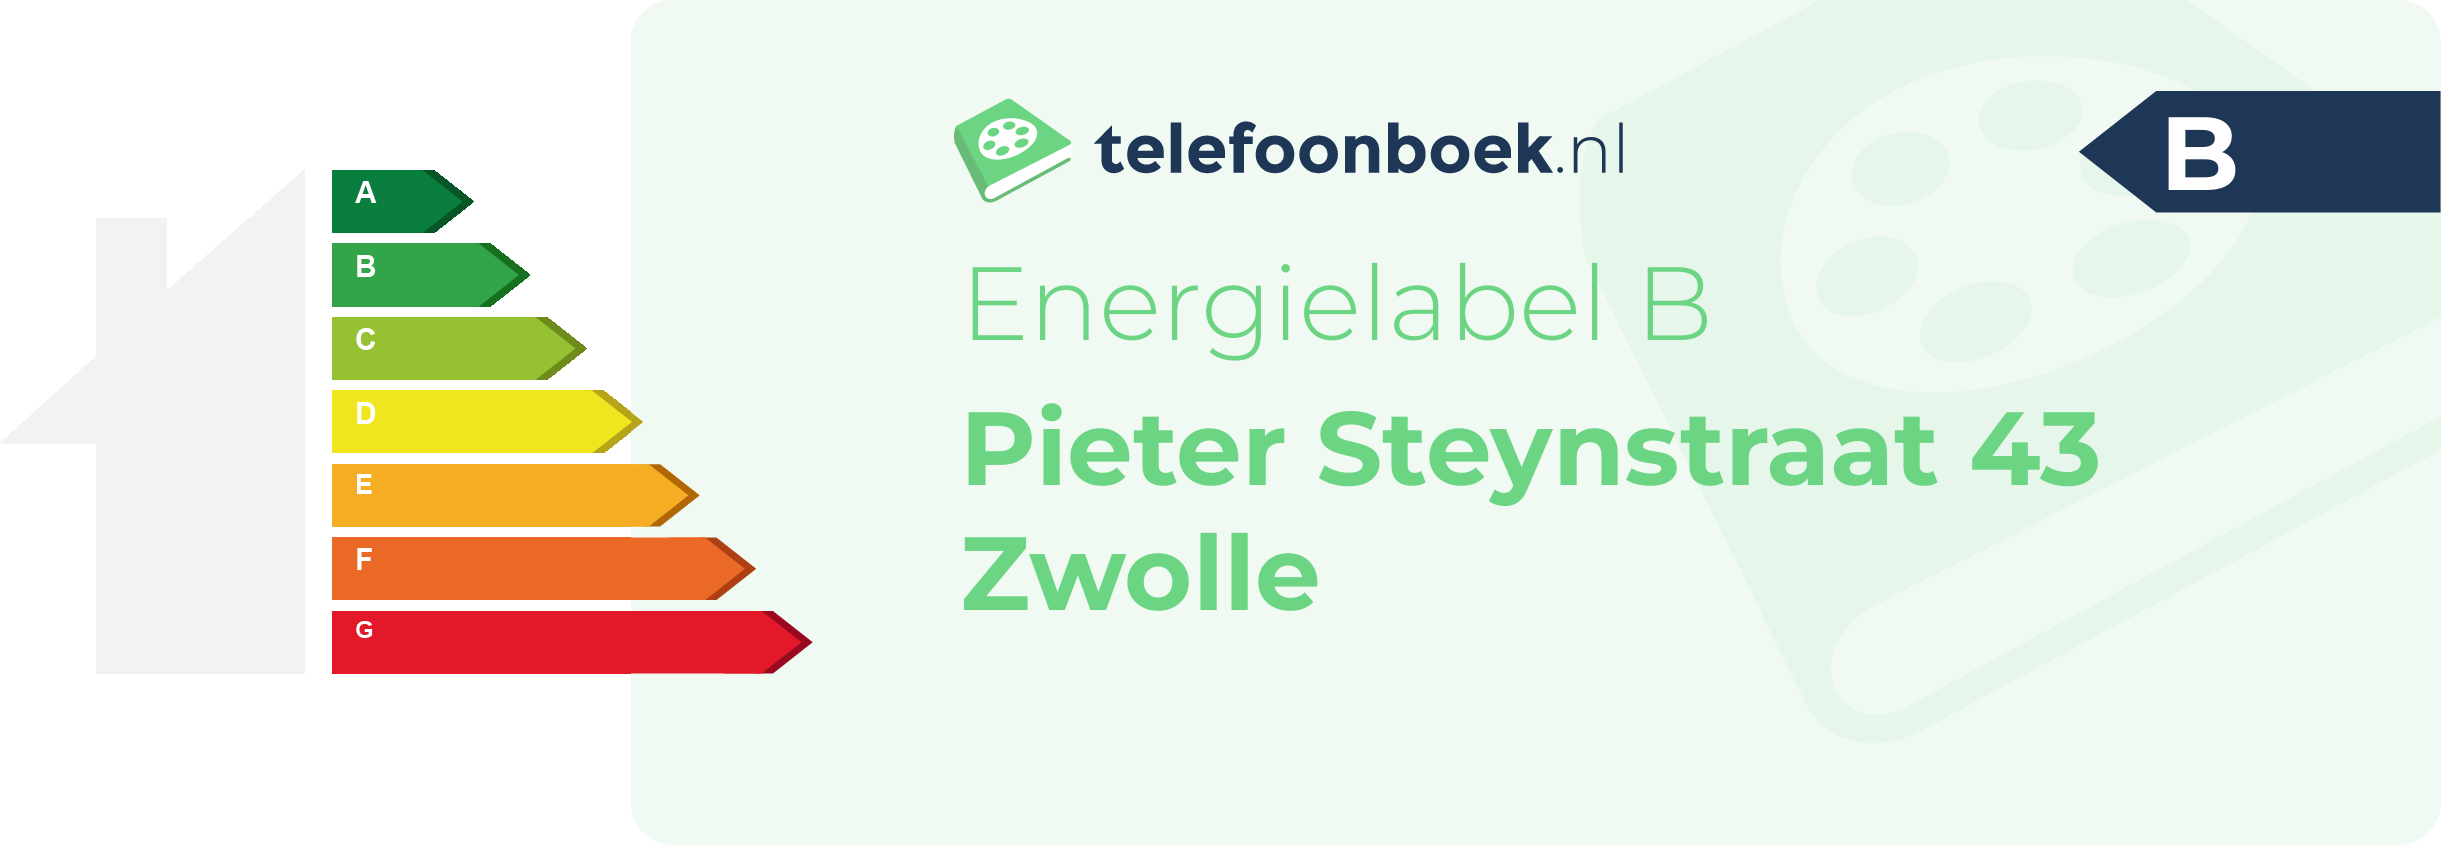 Energielabel Pieter Steynstraat 43 Zwolle